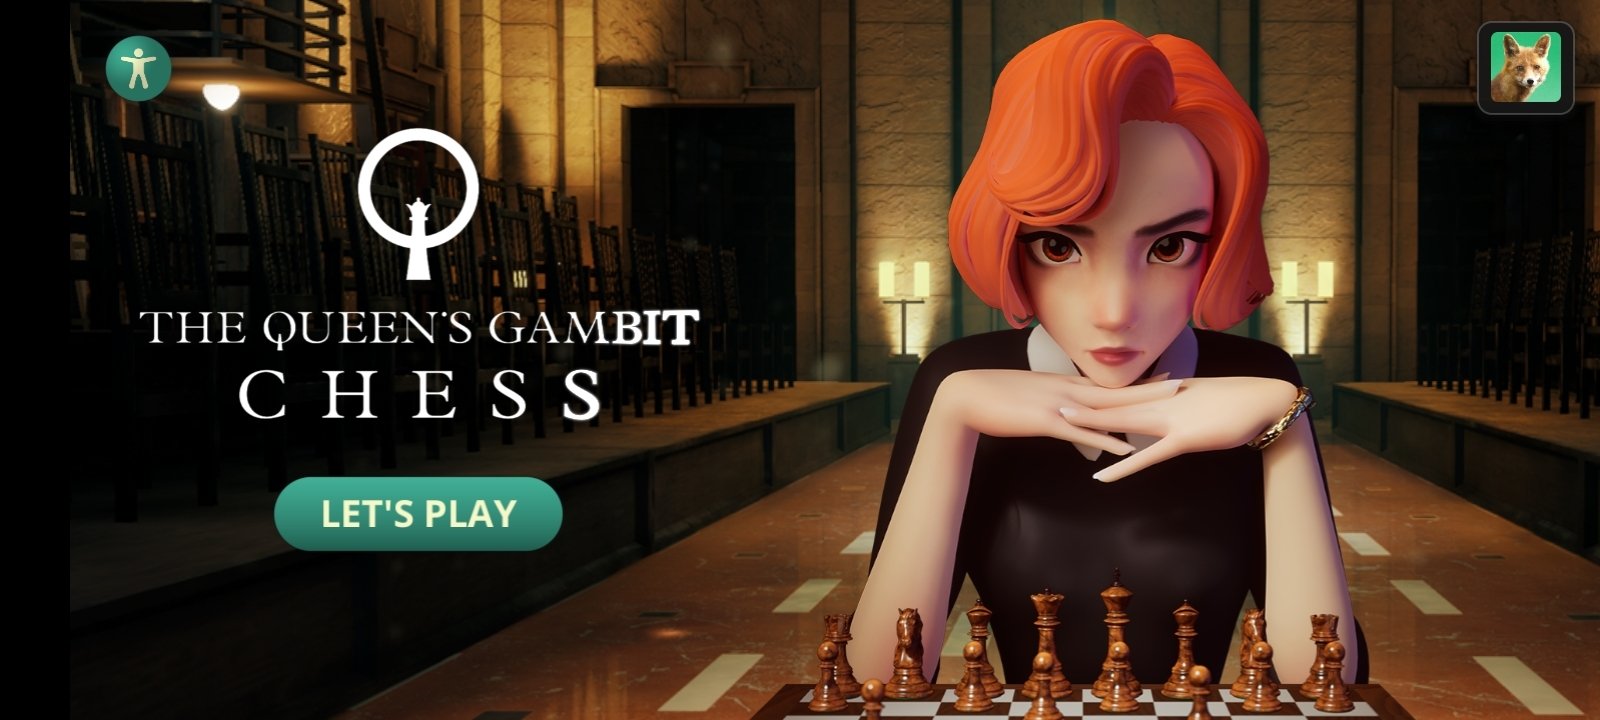 Série de xadrez O Gambito da Rainha ganha jogo para Android e iOS